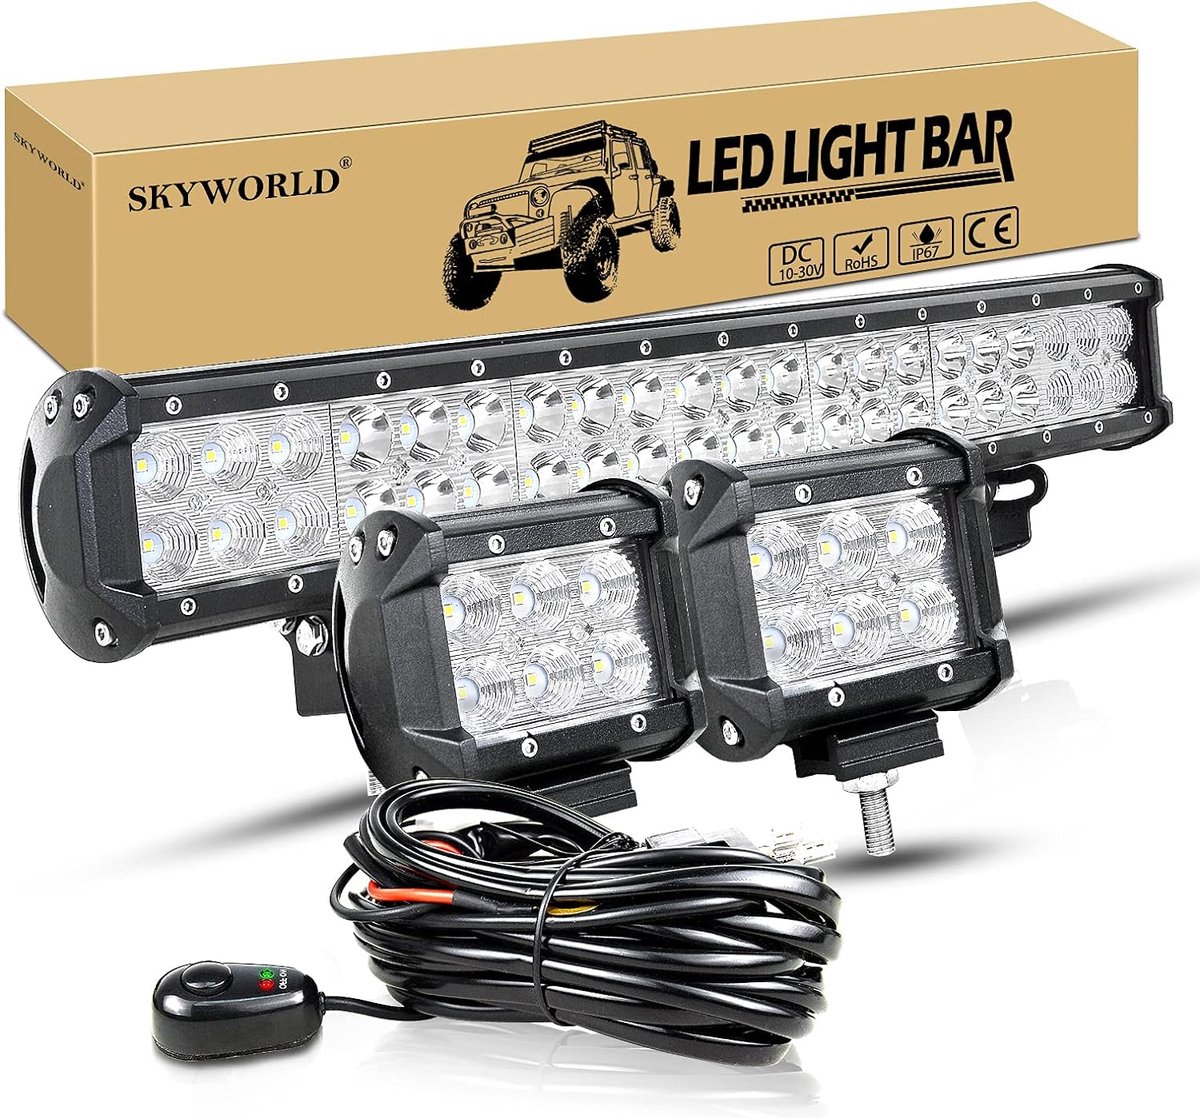 Lichtbalk met Bedrading voor Vrachtwagens - Krachtige LED Verlichting - Waterdicht - Verbeterde Veiligheid en Zichtbaarheid - Eenvoudige Installatie